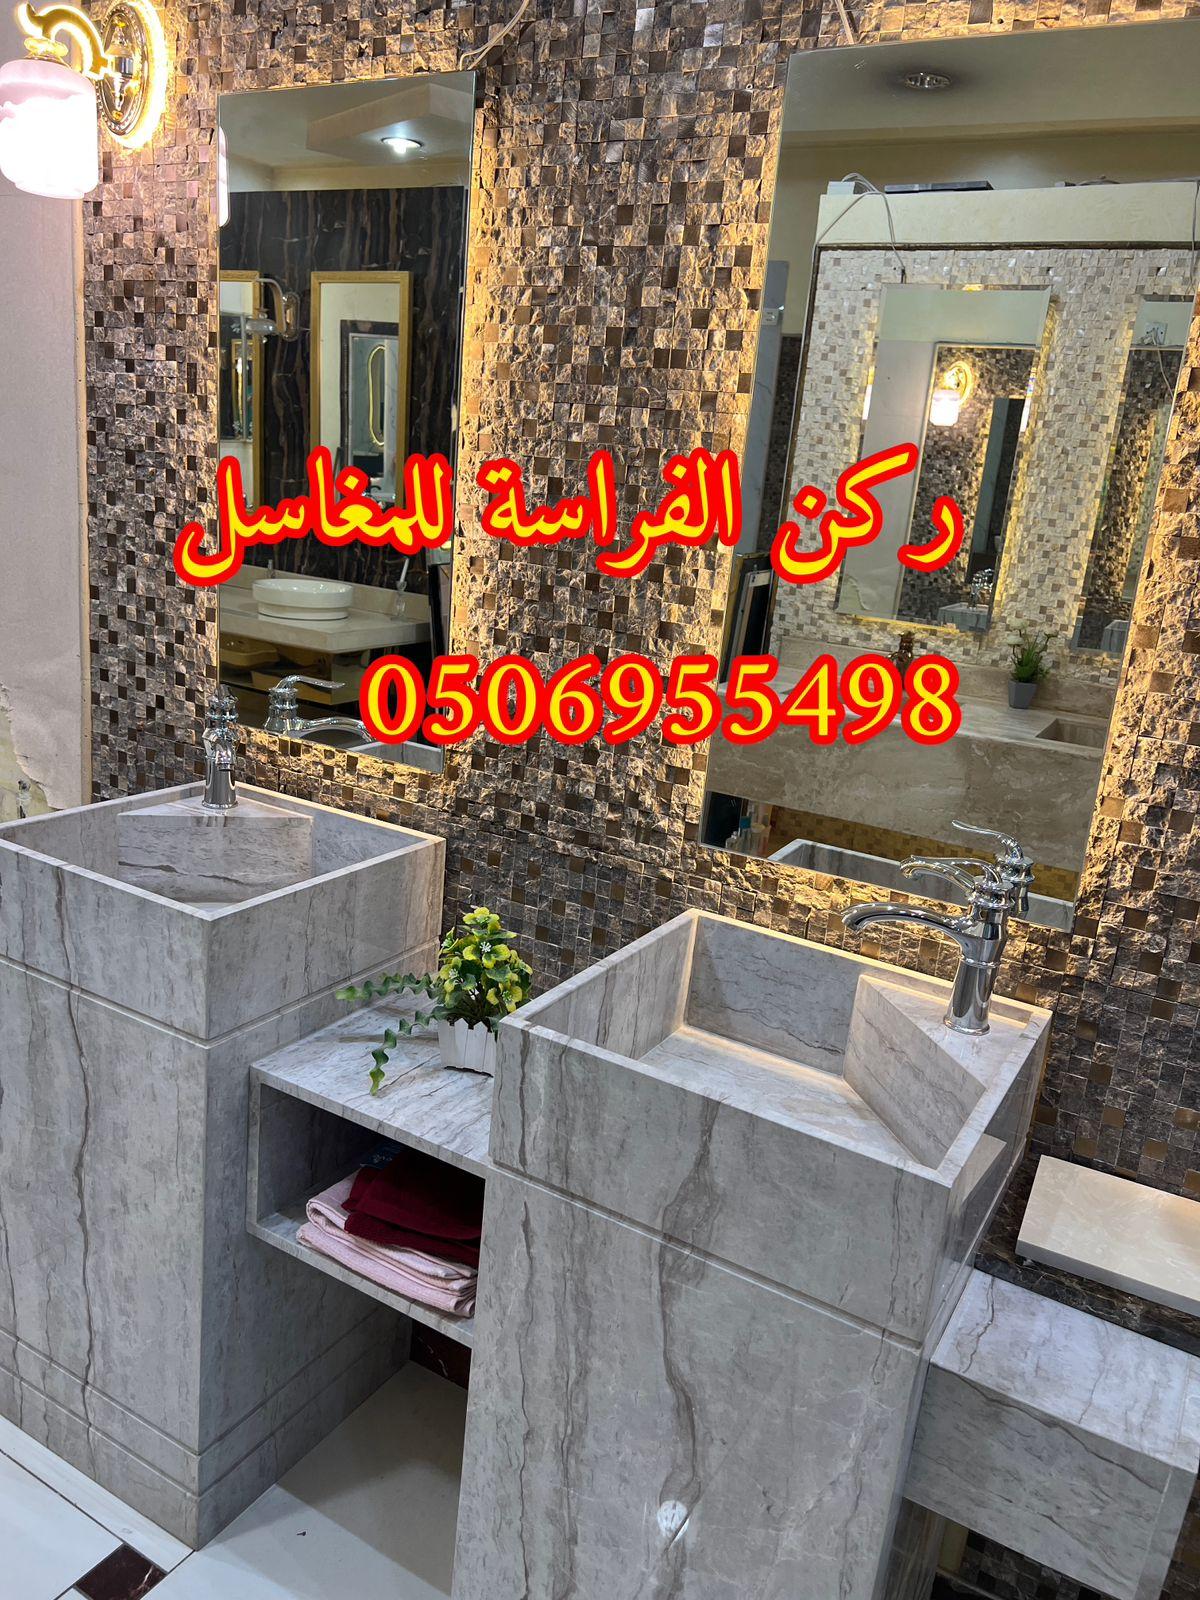 مغاسل رخام في الرياض مودرن للمجالس,0506955498 851250385